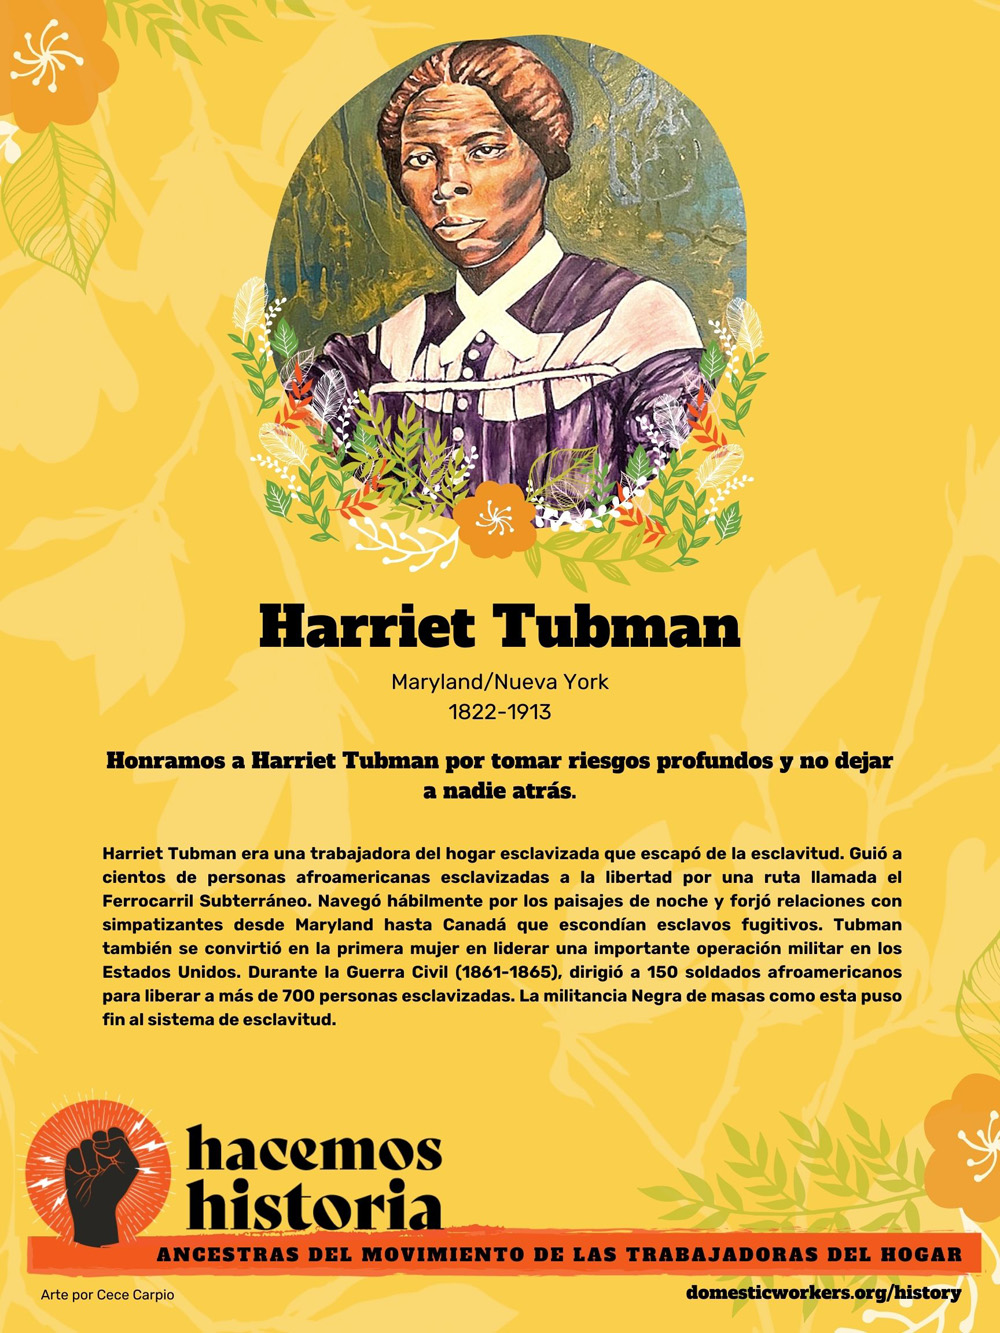 Retratos de las ancestras del movimiento de trabajadoras de hogar: Harriet Tubman